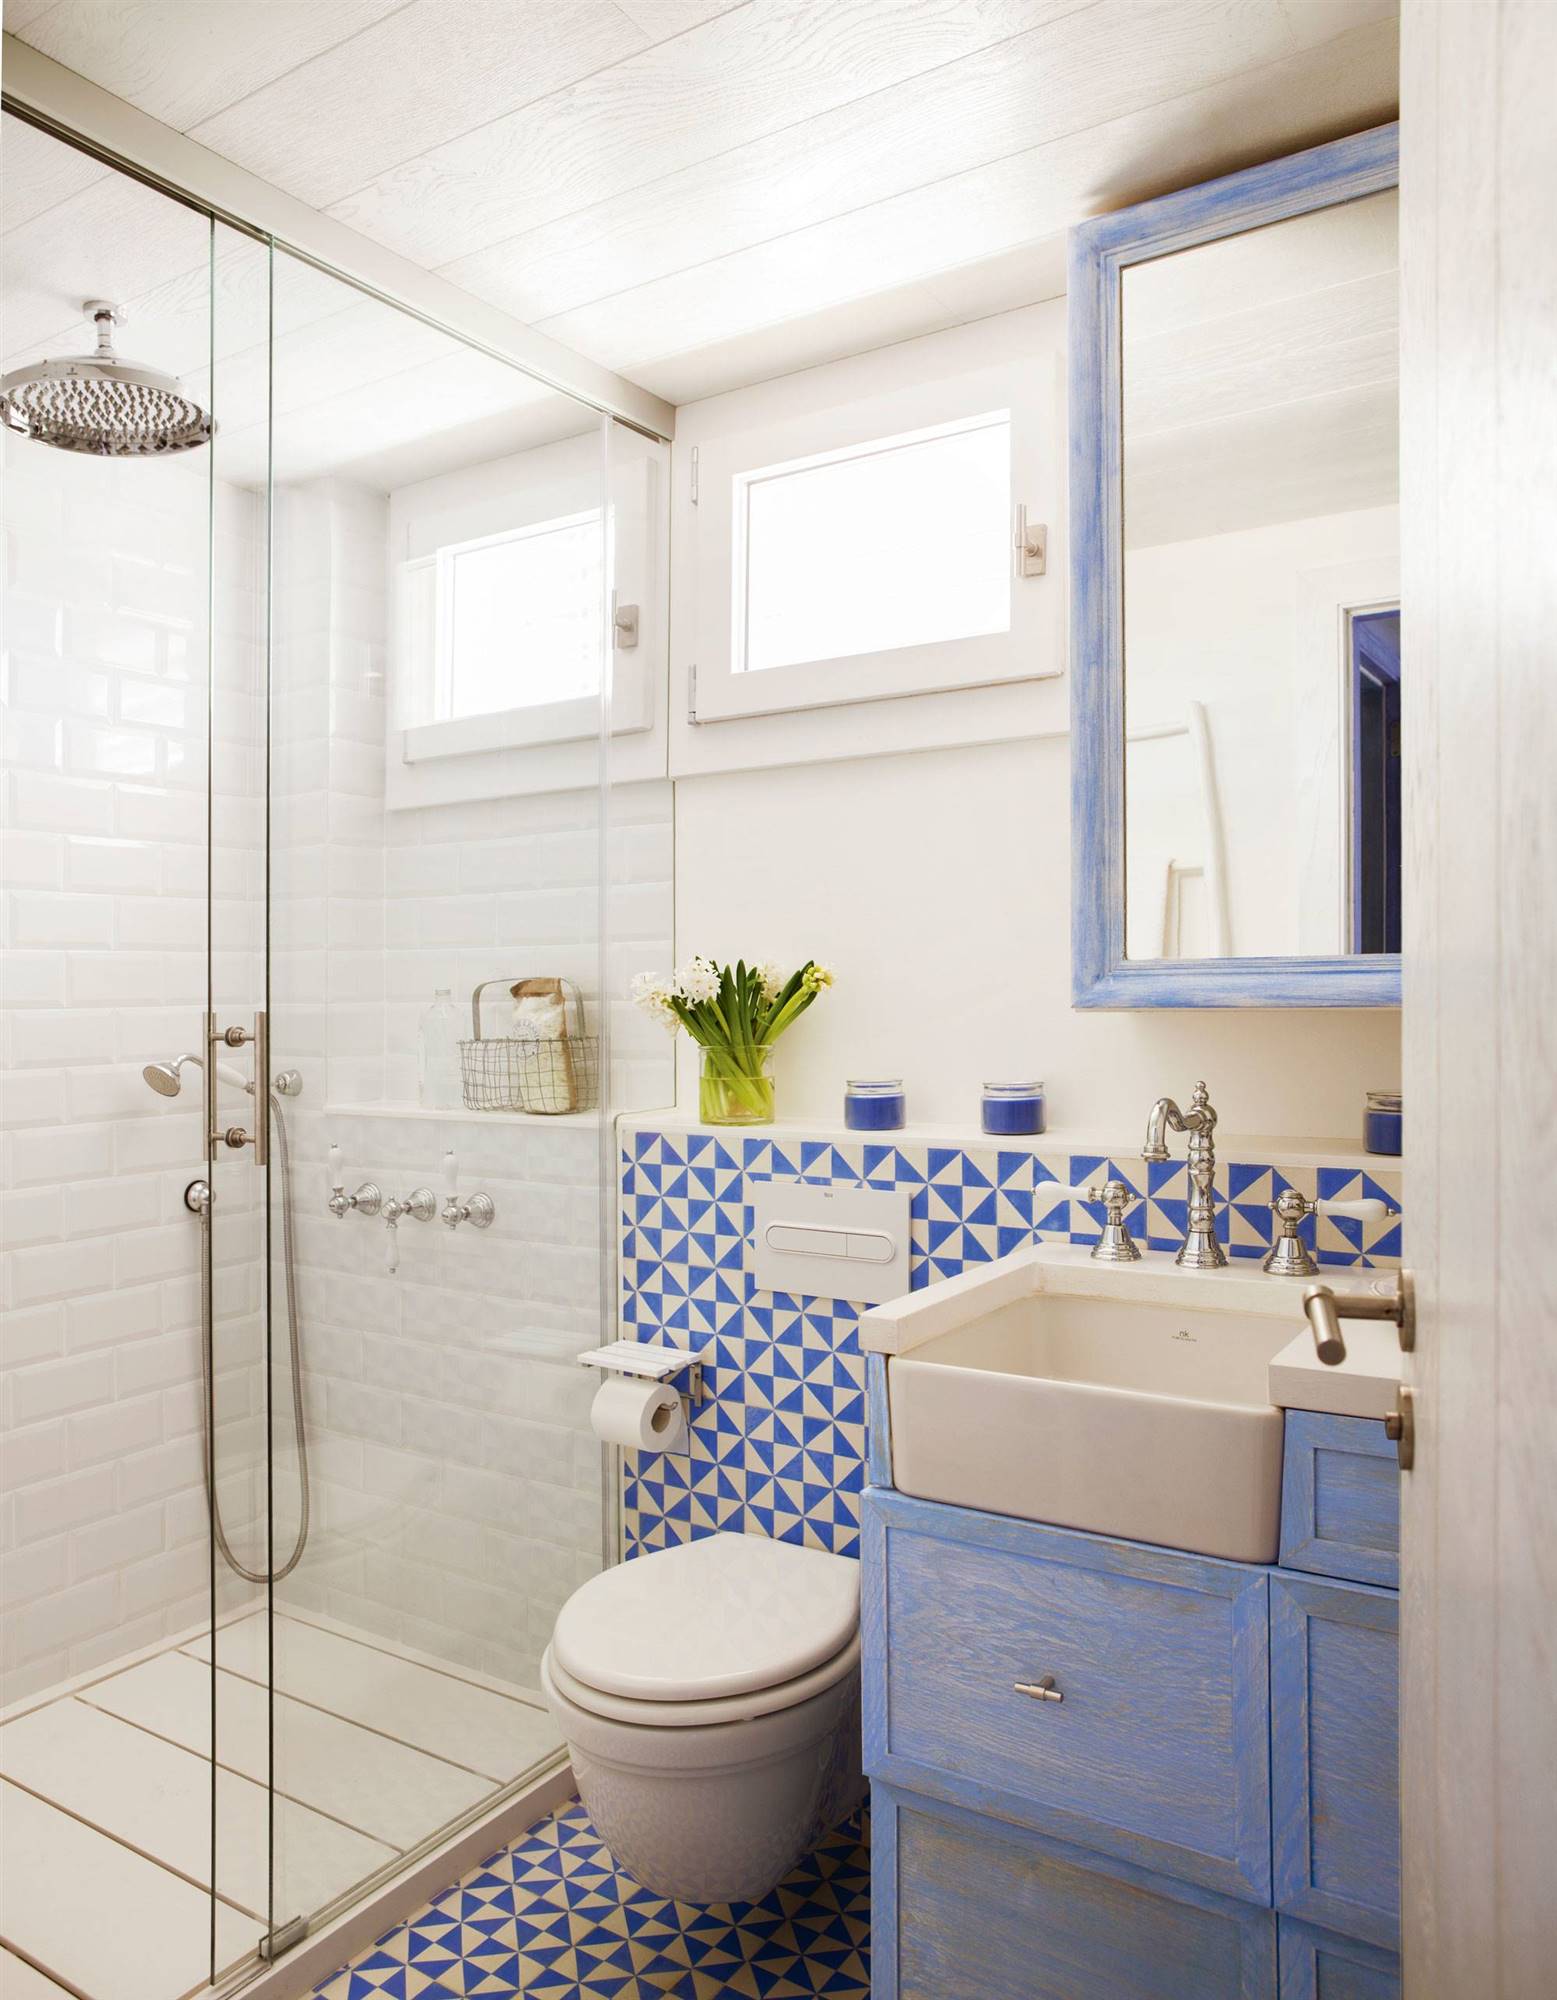 Baño pequeño con ducha decorado en azul 00408100